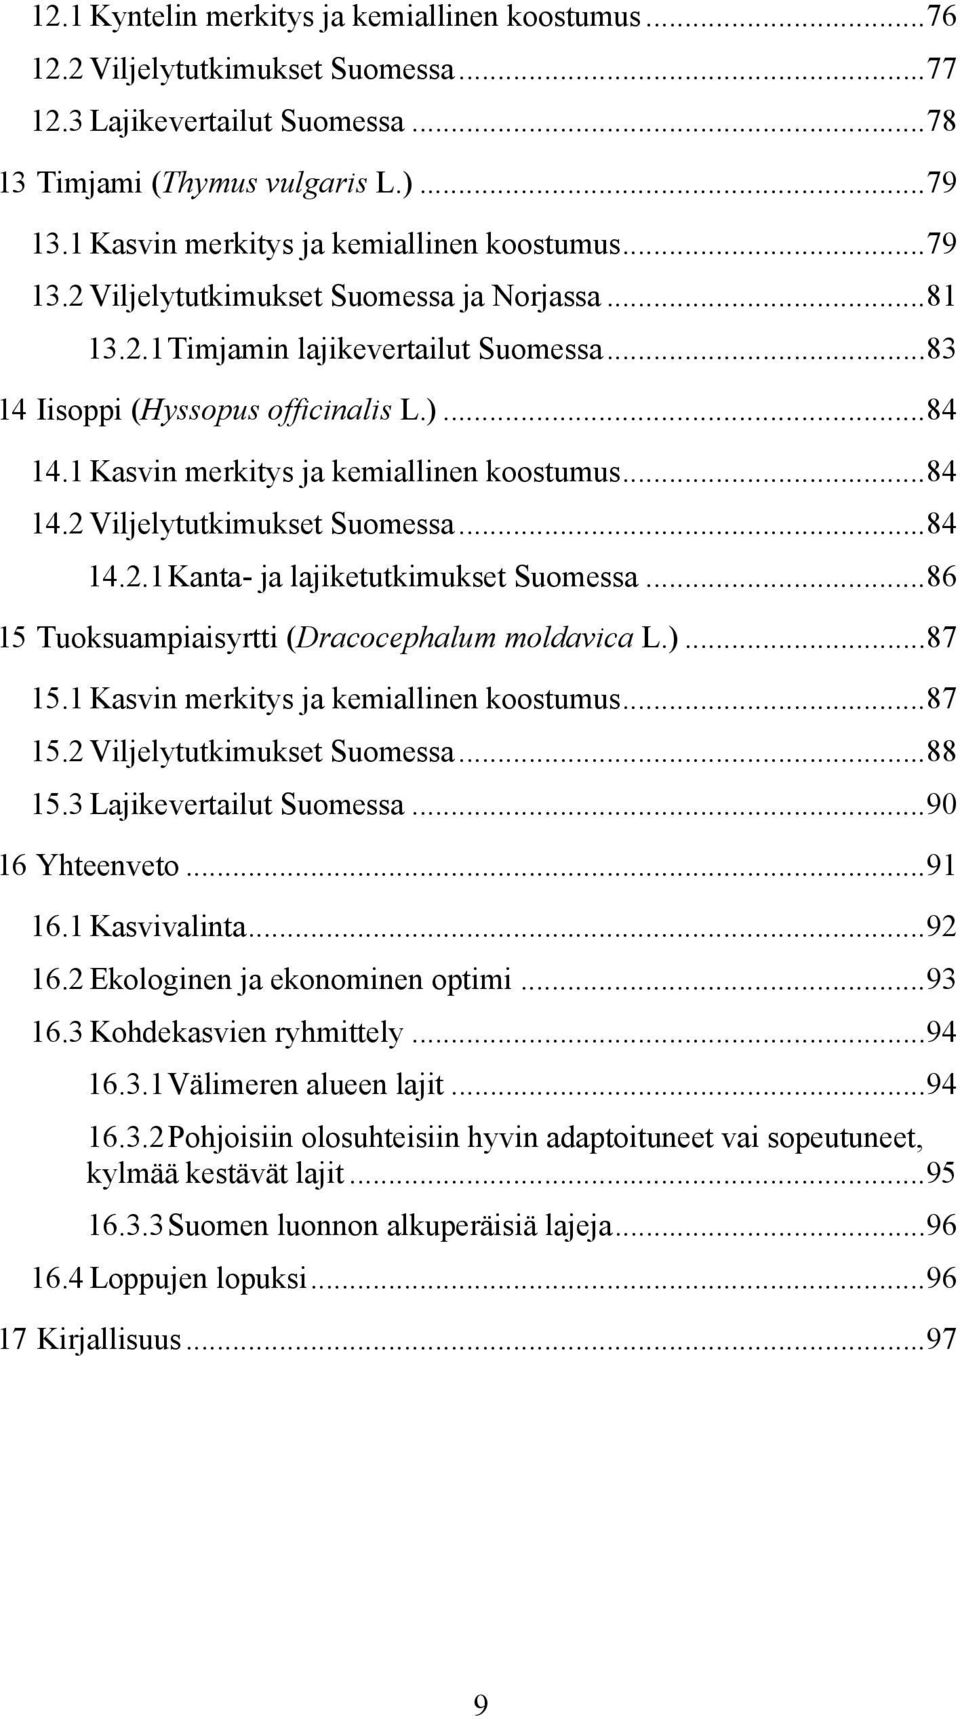 1 Kasvin merkitys ja kemiallinen koostumus...84 14.2 Viljelytutkimukset Suomessa...84 14.2.1 Kanta- ja lajiketutkimukset Suomessa...86 15 Tuoksuampiaisyrtti (Dracocephalum moldavica L.)...87 15.